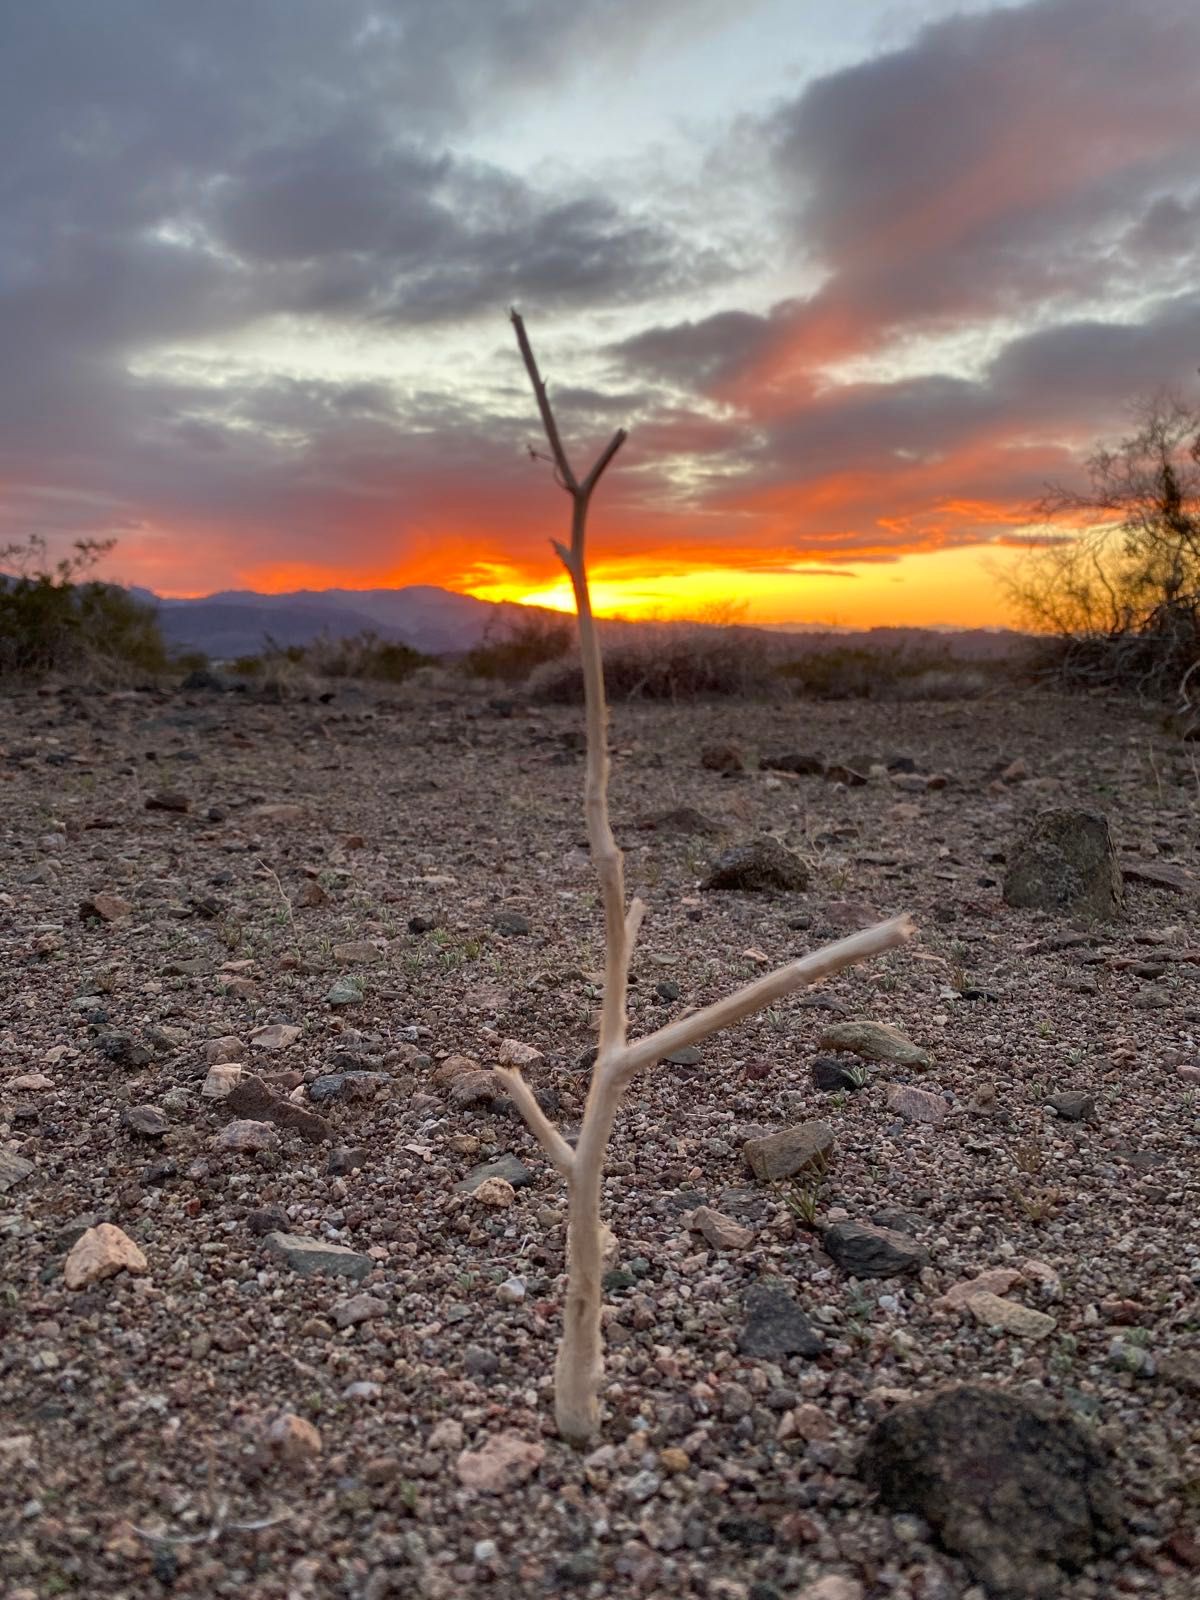 View from this evening’s Arizona desert sunset